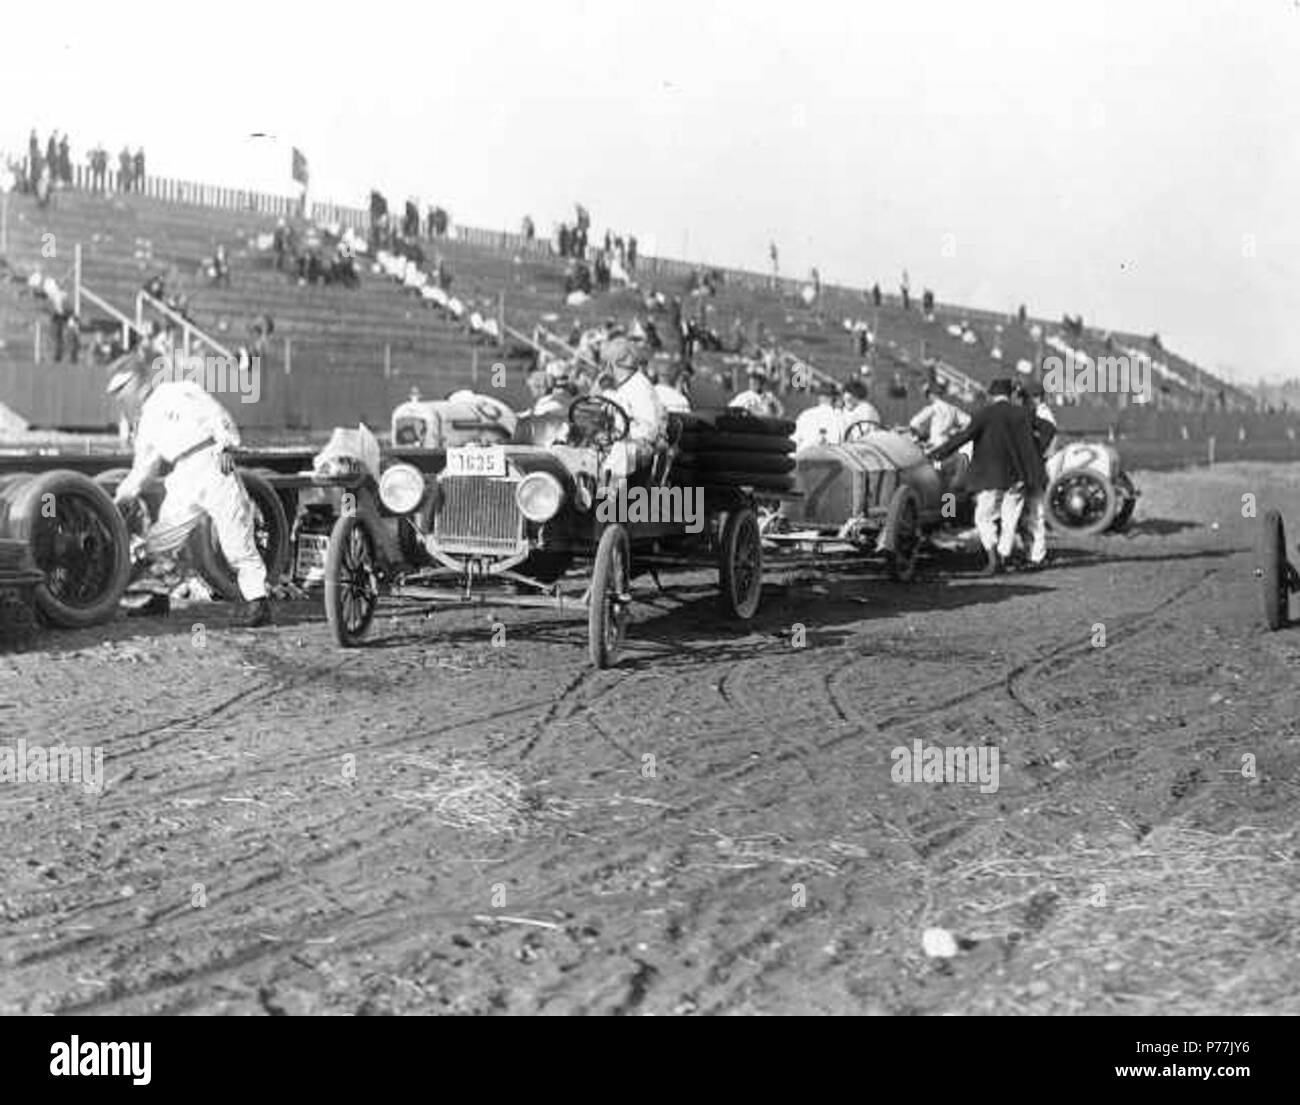 Englisch: Jim Parsons' #7 Frantz Rennwagen ist in der Grube in der Gegend von Tacoma Speedway ca. geparkt 1914 während ein Fahrzeug mit einer Last von Reifen langsam vor Es sichert. Andere Reifen bereits entladen haben, und sind aufrecht in der Nähe gestapelt. Die Tribünen sind fast leer, diese Praxis kann Zeit im Speedway wurden statt der tatsächlichen Juli Rennen. Jim Parsons, aus Seattle, würde der InterCity 100 Rennen in drei aufeinander folgenden Jahren, 1913-1915 zu gewinnen, die ihm den ewigen Wanderpokal zu halten. TPL -4424. Um 1914 13 Tacoma Speedway 1914 Pit - 39016 Stockfoto